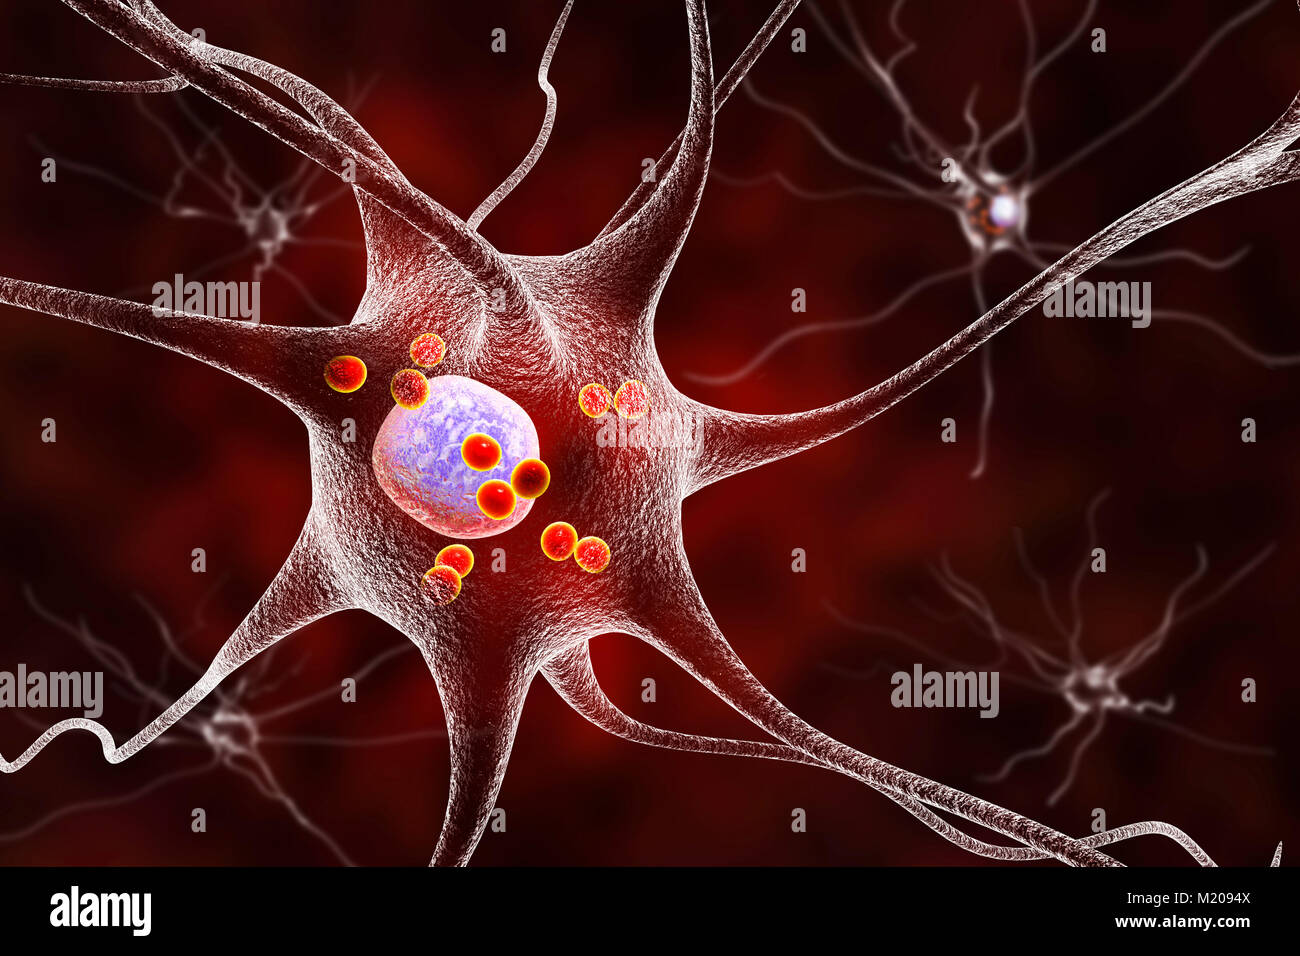 La maladie de Parkinson les cellules nerveuses. Illustration d'ordinateur des droits de cellules nerveuses touchées par Lewy (petites sphères rouges dans le cytoplasme des neurones) dans le cerveau d'un patient avec la maladie de Parkinson. Les corps de Lewy sont des accumulations anormales de protéines qui se développent à l'intérieur des cellules nerveuses dans la maladie de Parkinson, la démence à corps de Lewy, et d'autres troubles neurologiques. Banque D'Images